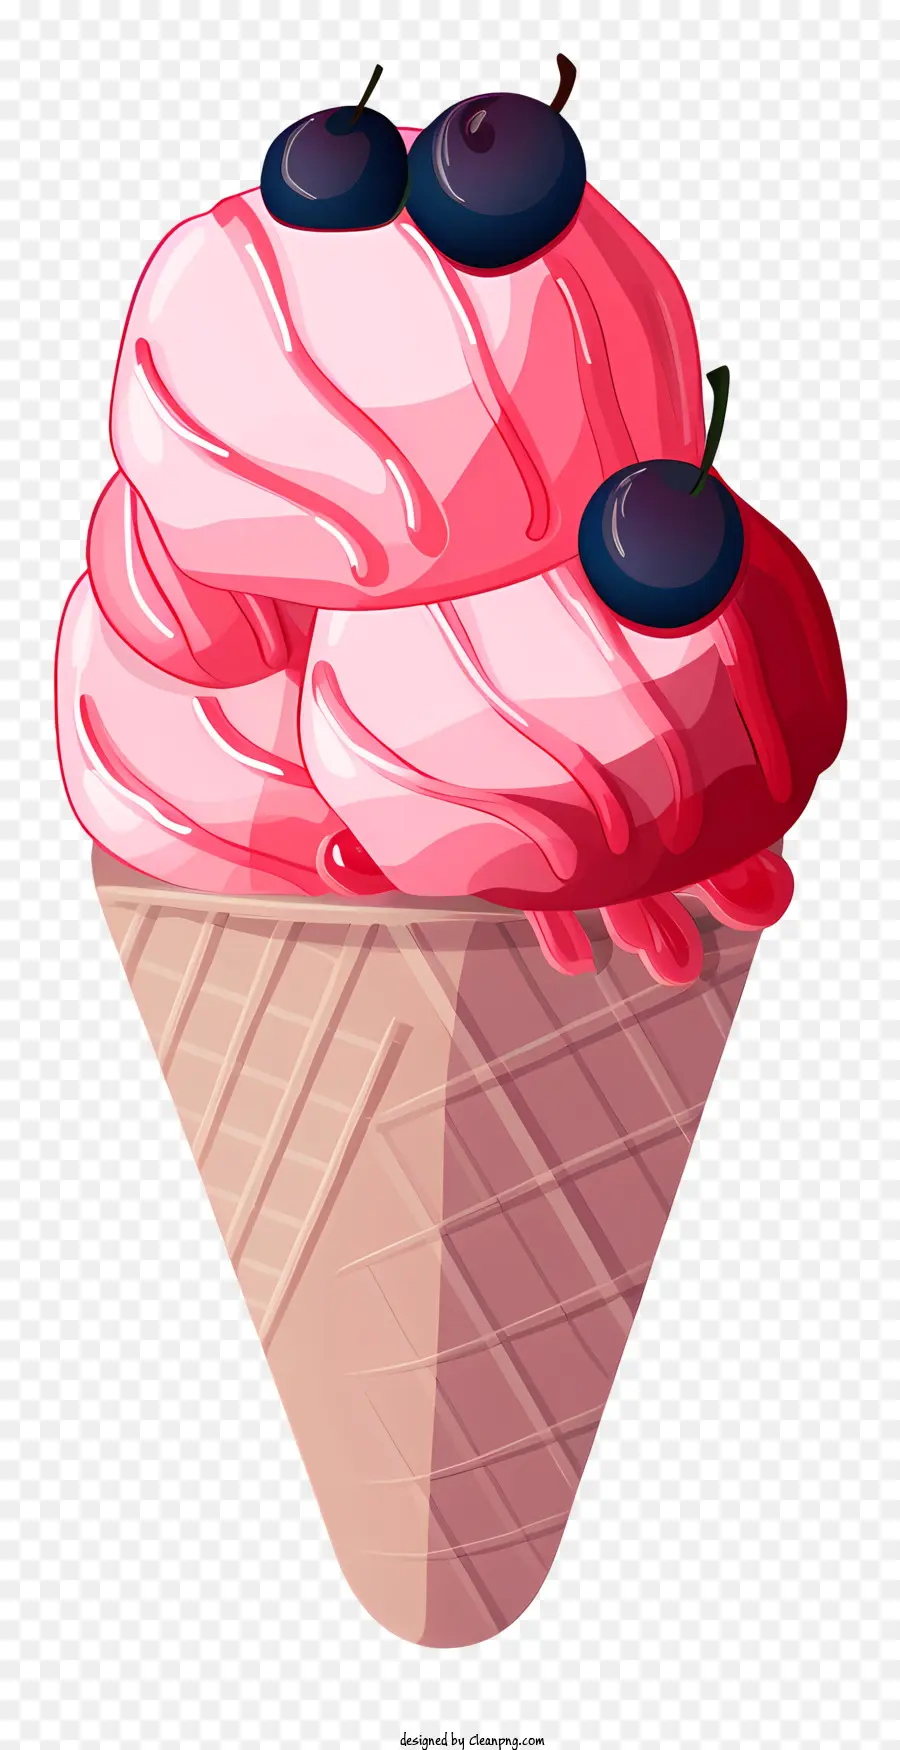 cono gelato rosa ciliegie gelati a cono waffle - Cono gelato rosa vibrante e giocoso